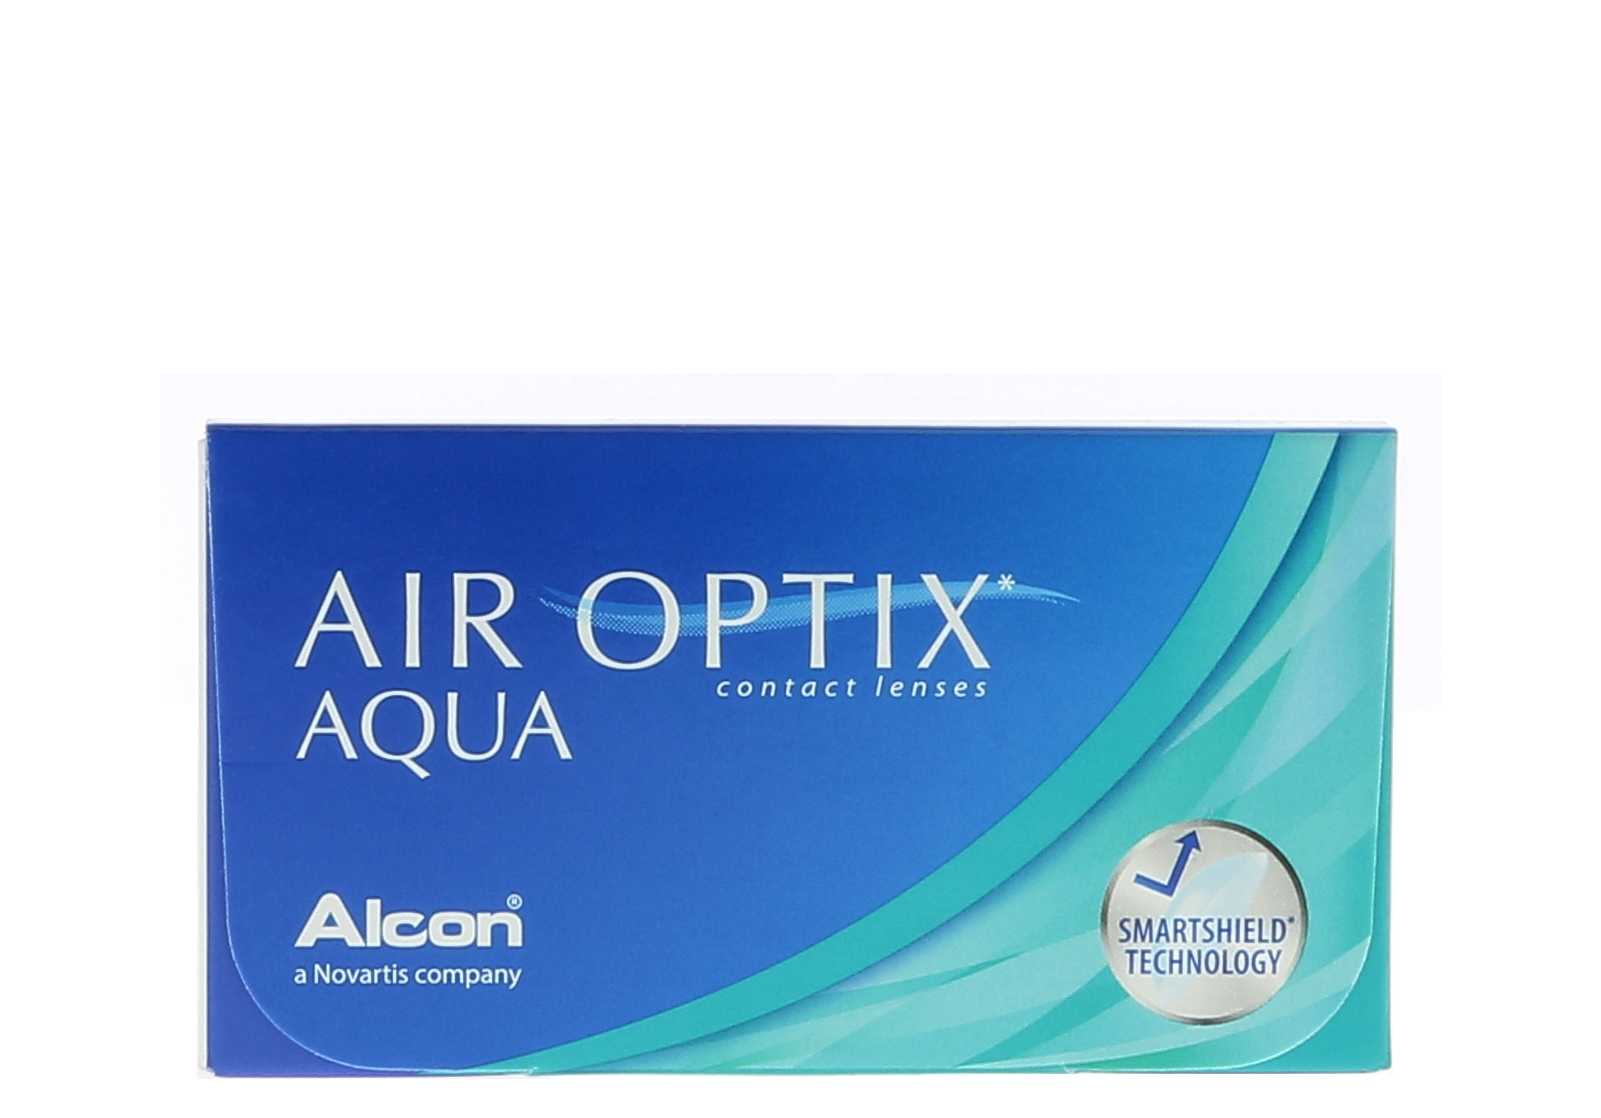 Air optix aqua ciba vision alcon cvs health 2015 fortune